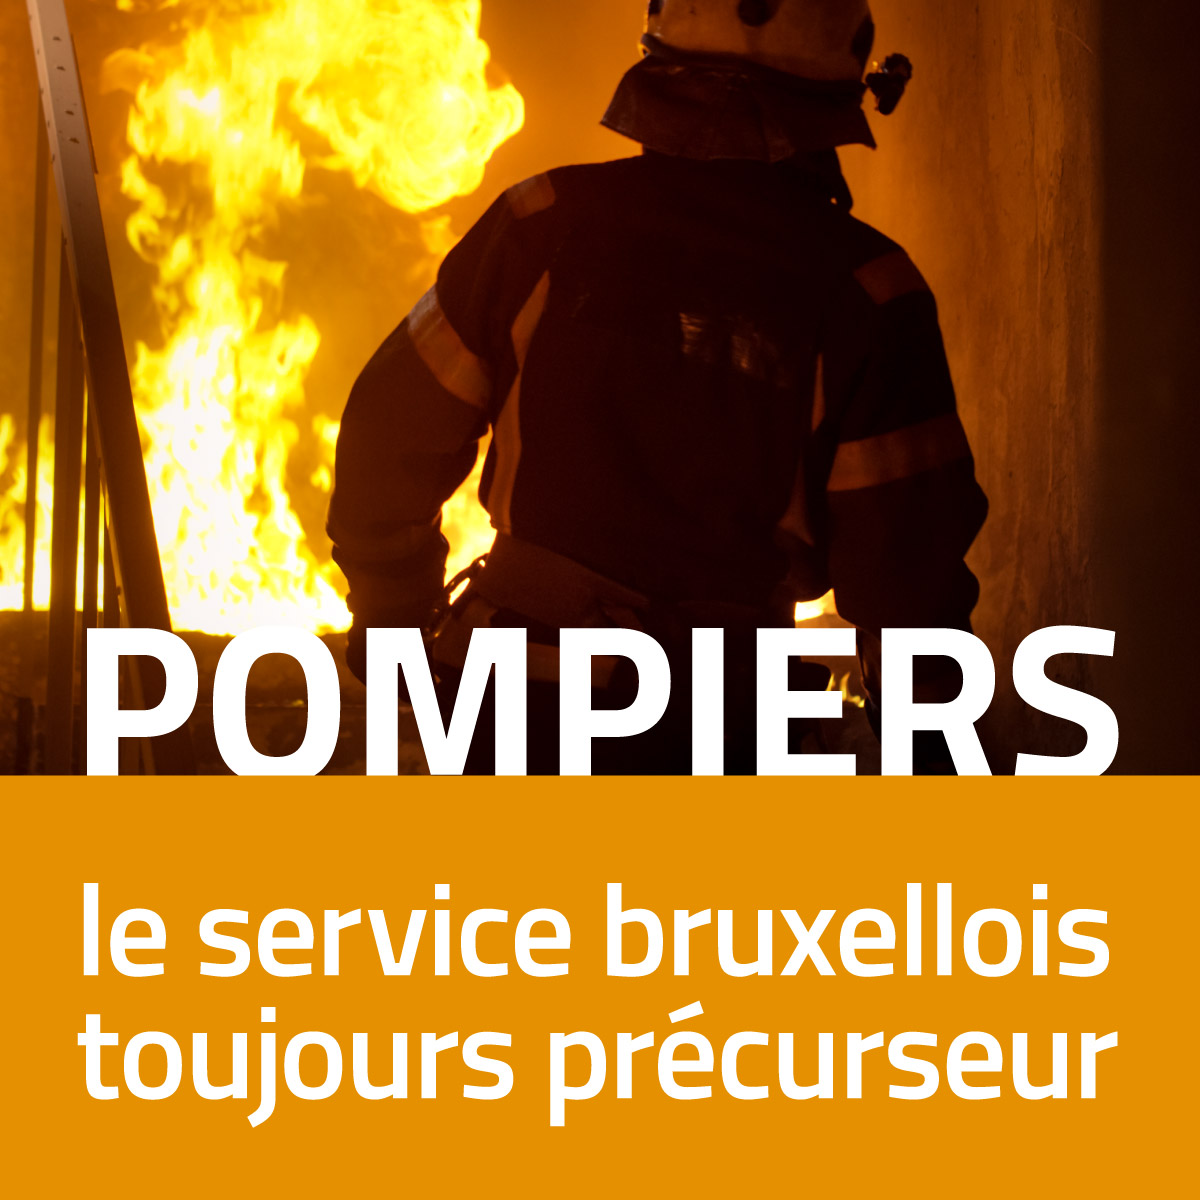 Pompiers : le service bruxellois précurseur